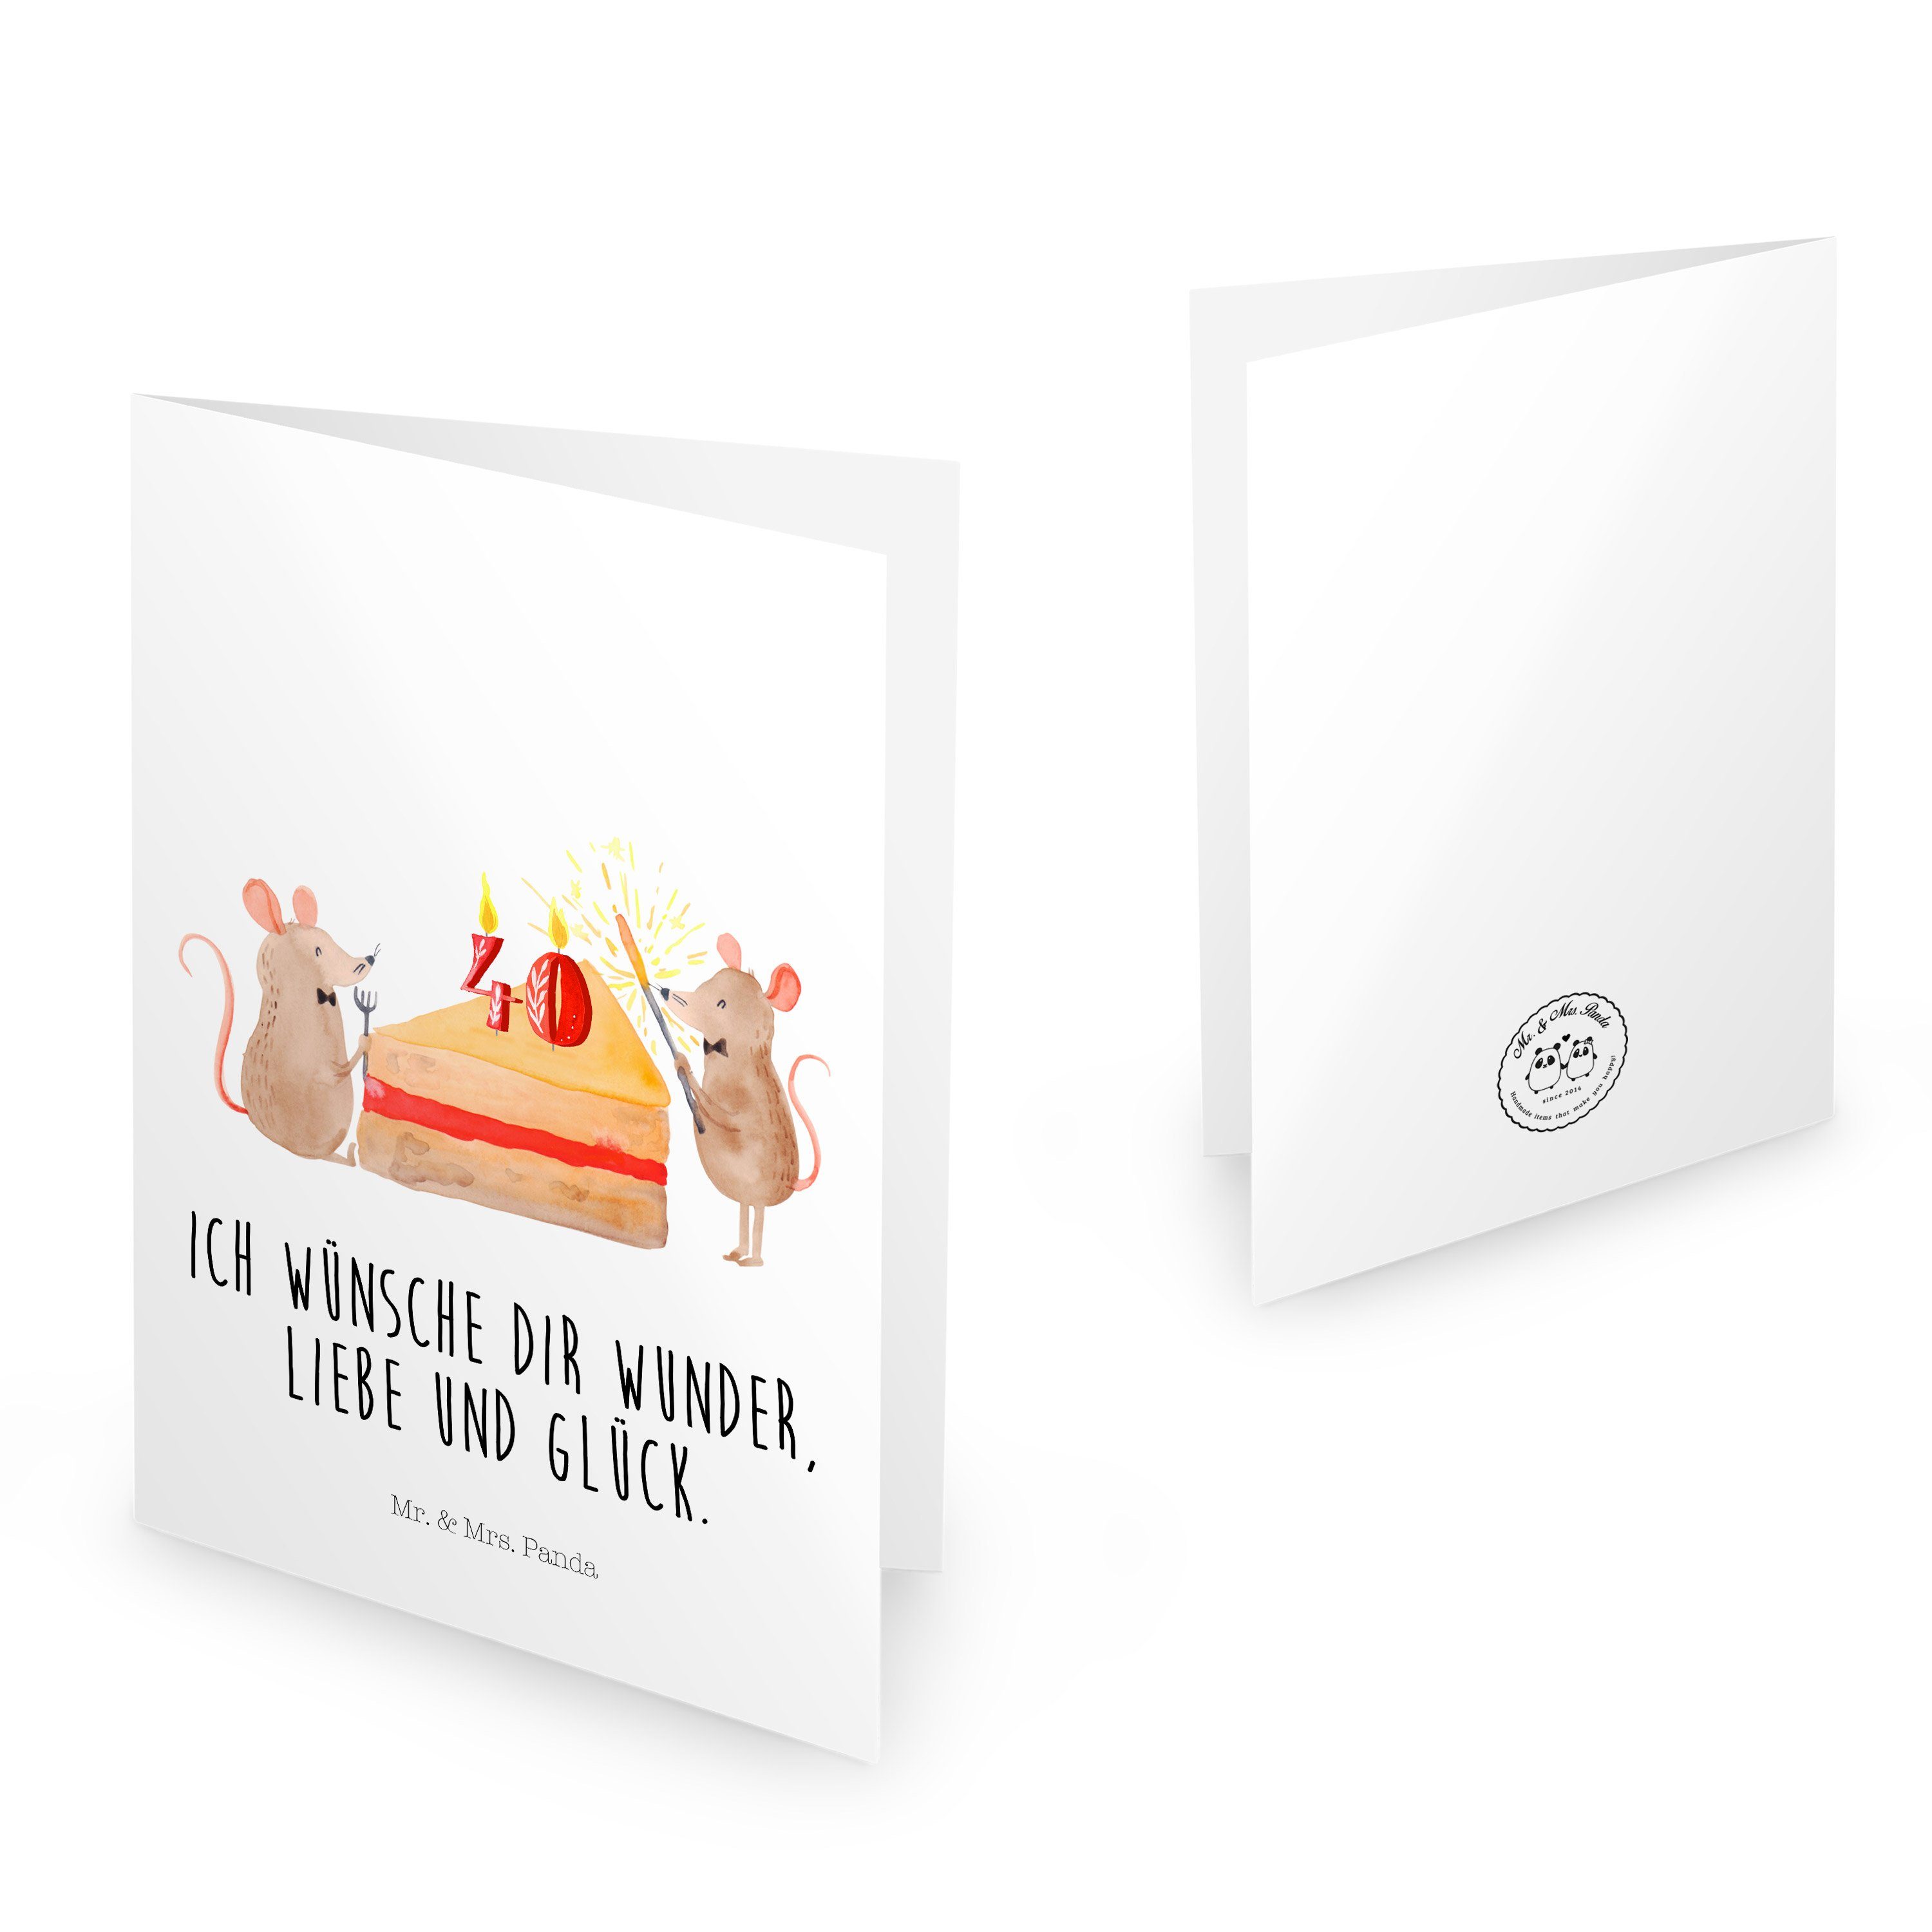 Mr. & Mrs. Panda Geburtstagskarten - Kuchenstück, Geschenk, Kuchen Geburtstag Weiß Mäuse 40. - Grusskart